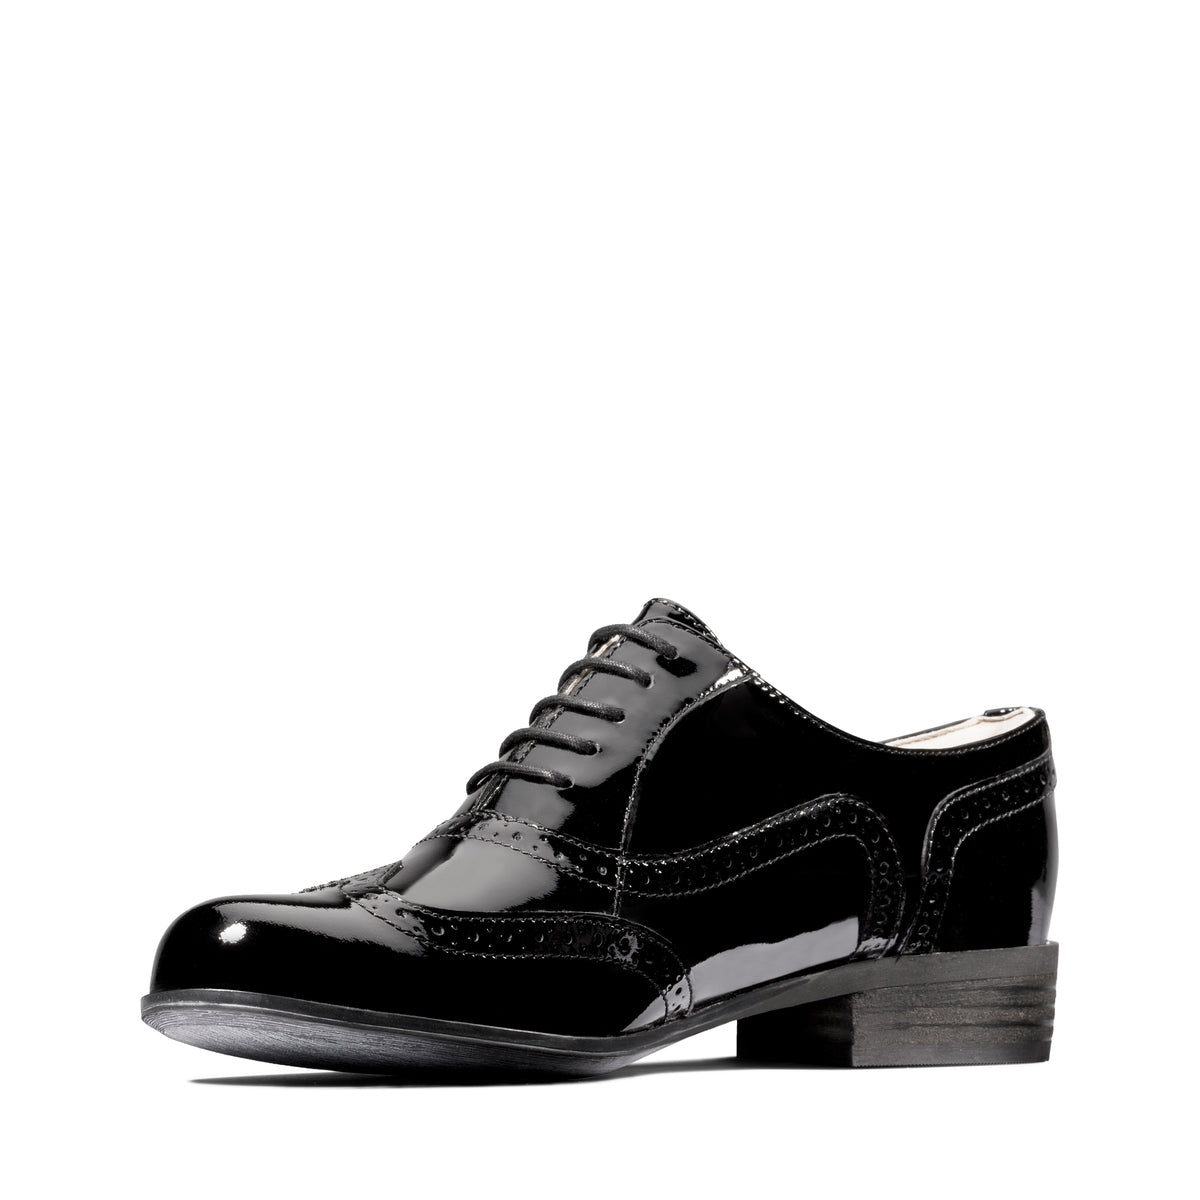 Zapatos Oxford De La Marca Clarks Para Mujer Modelo Hamble Oak Black Pat En Color Negro